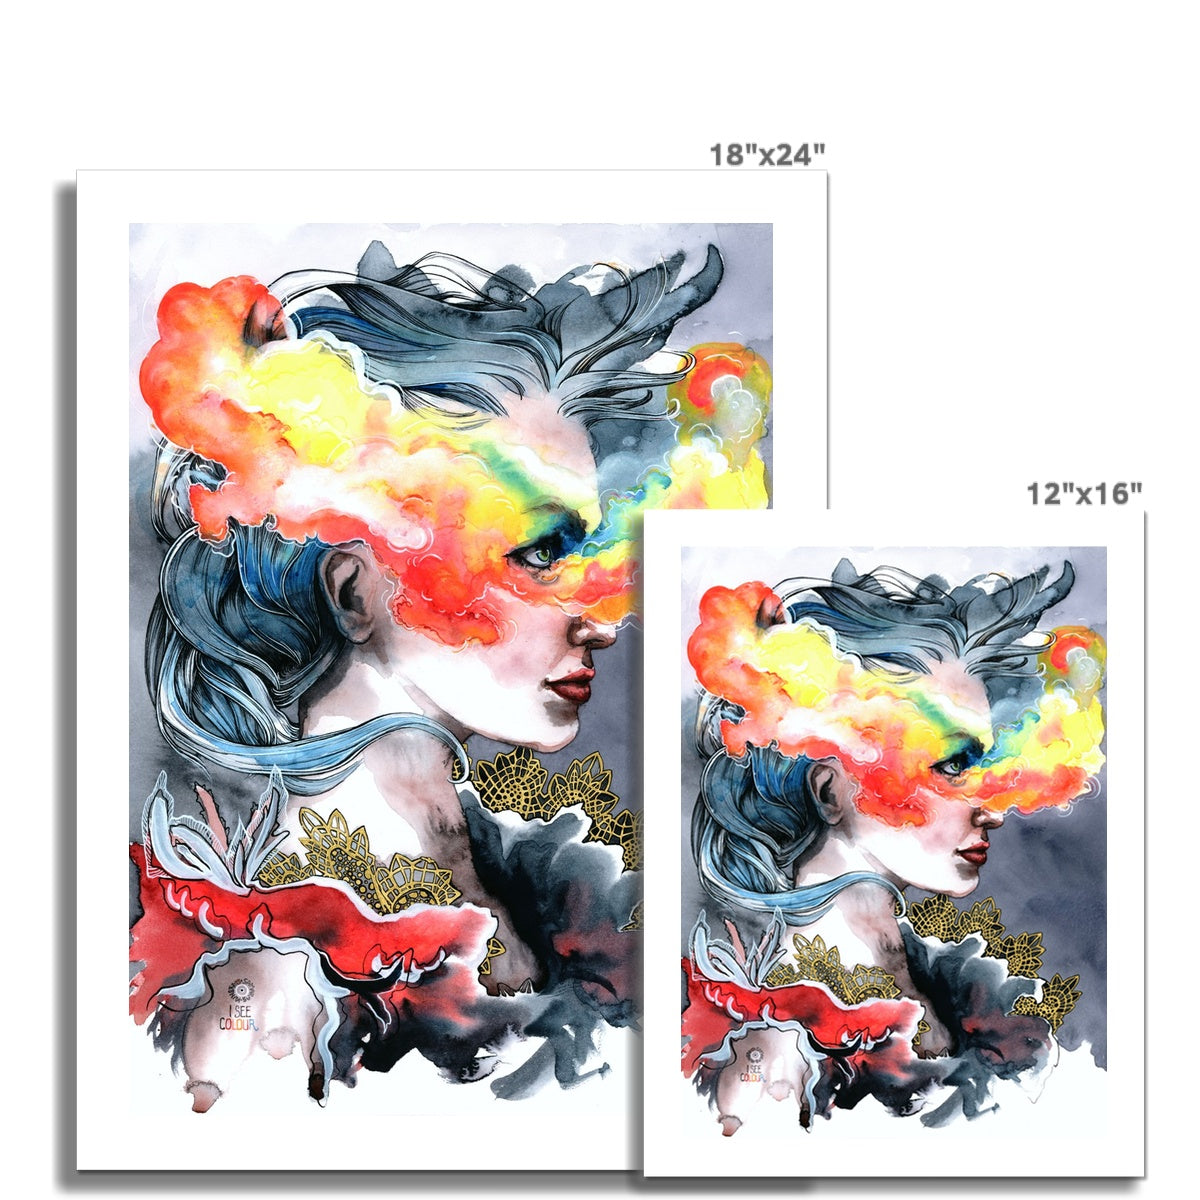 I See Colour · Kunstdruck auf Hahnemühle Kupferdruckpapier